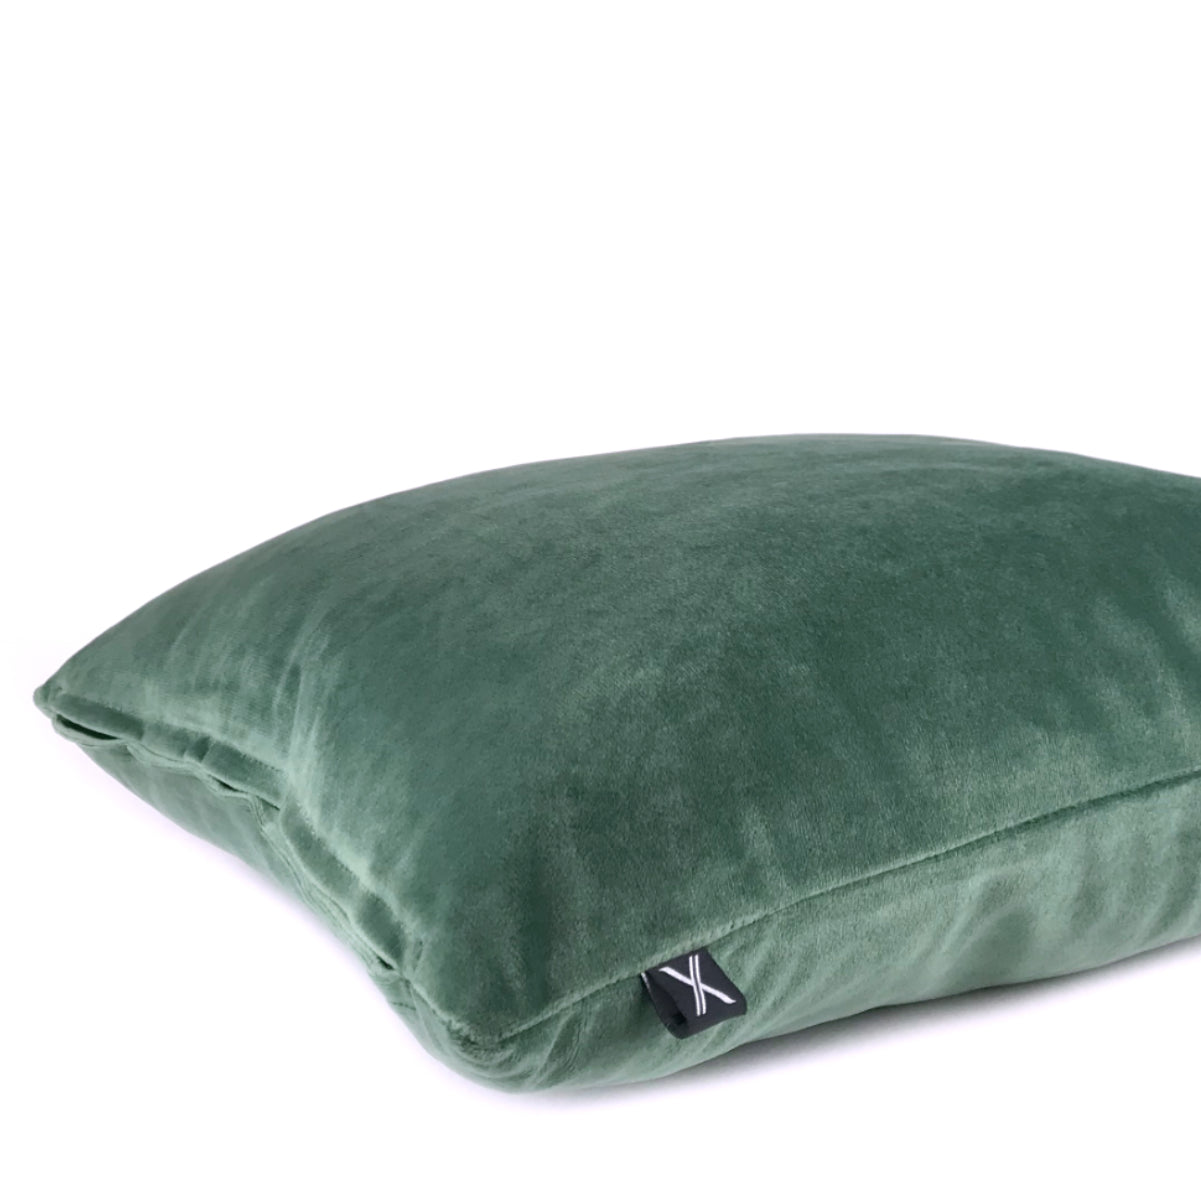 Cushion BELLUS 45x45 Velvet Dark Green